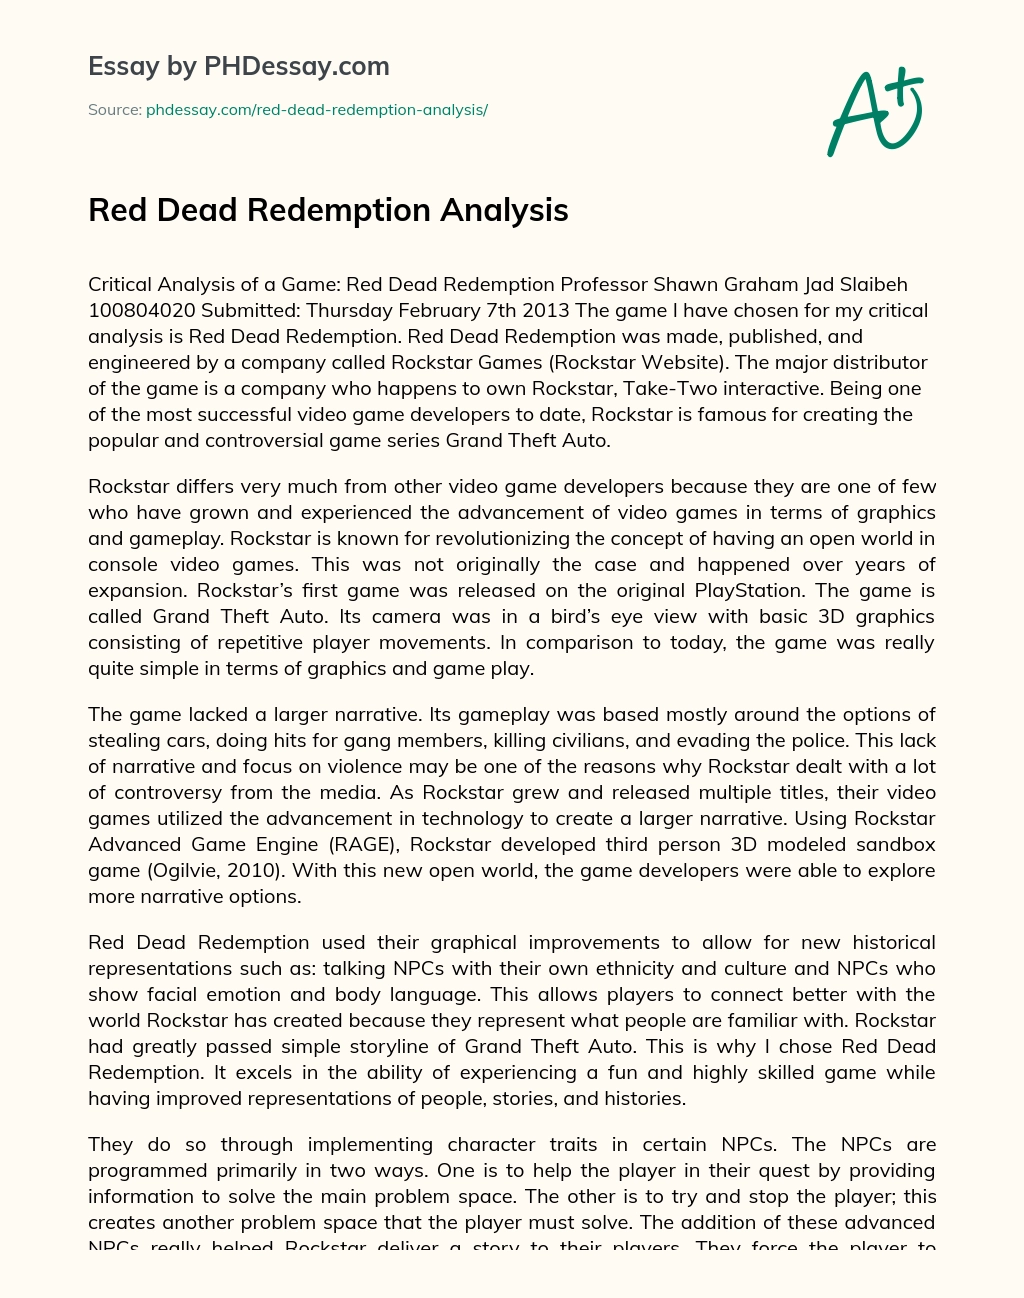 Red Dead Redemption Analysis essay